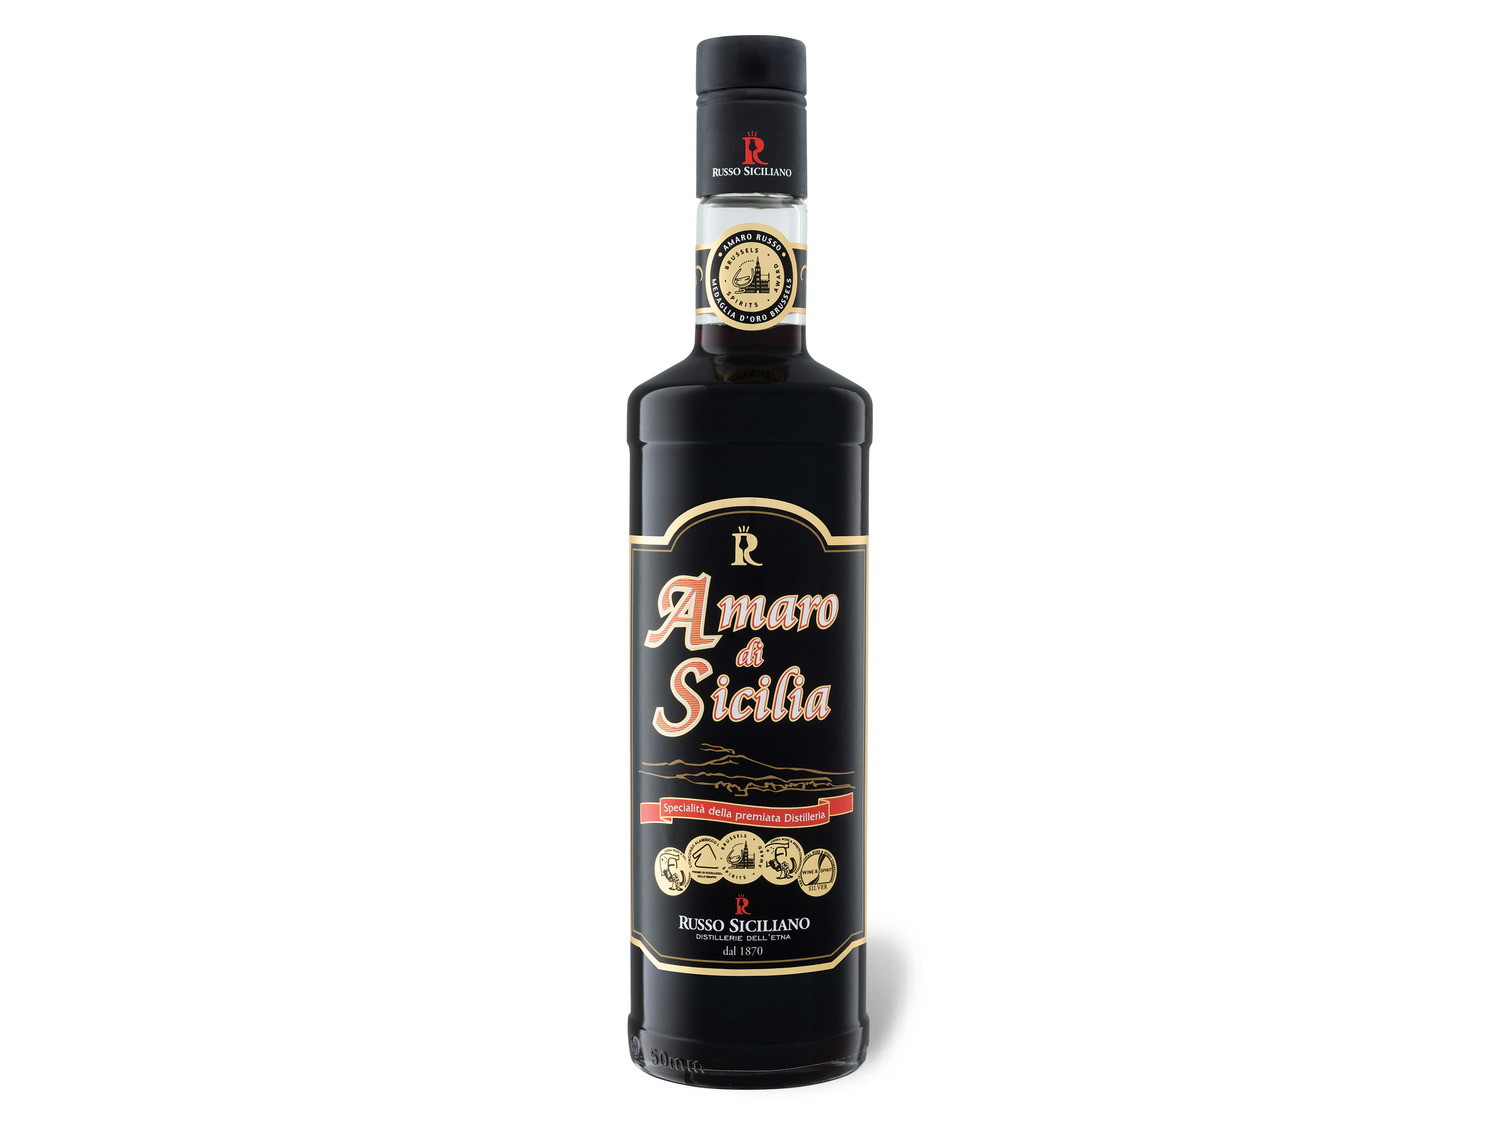 Russo Siciliano Amaro di Sicilia 32% Vol | LIDL